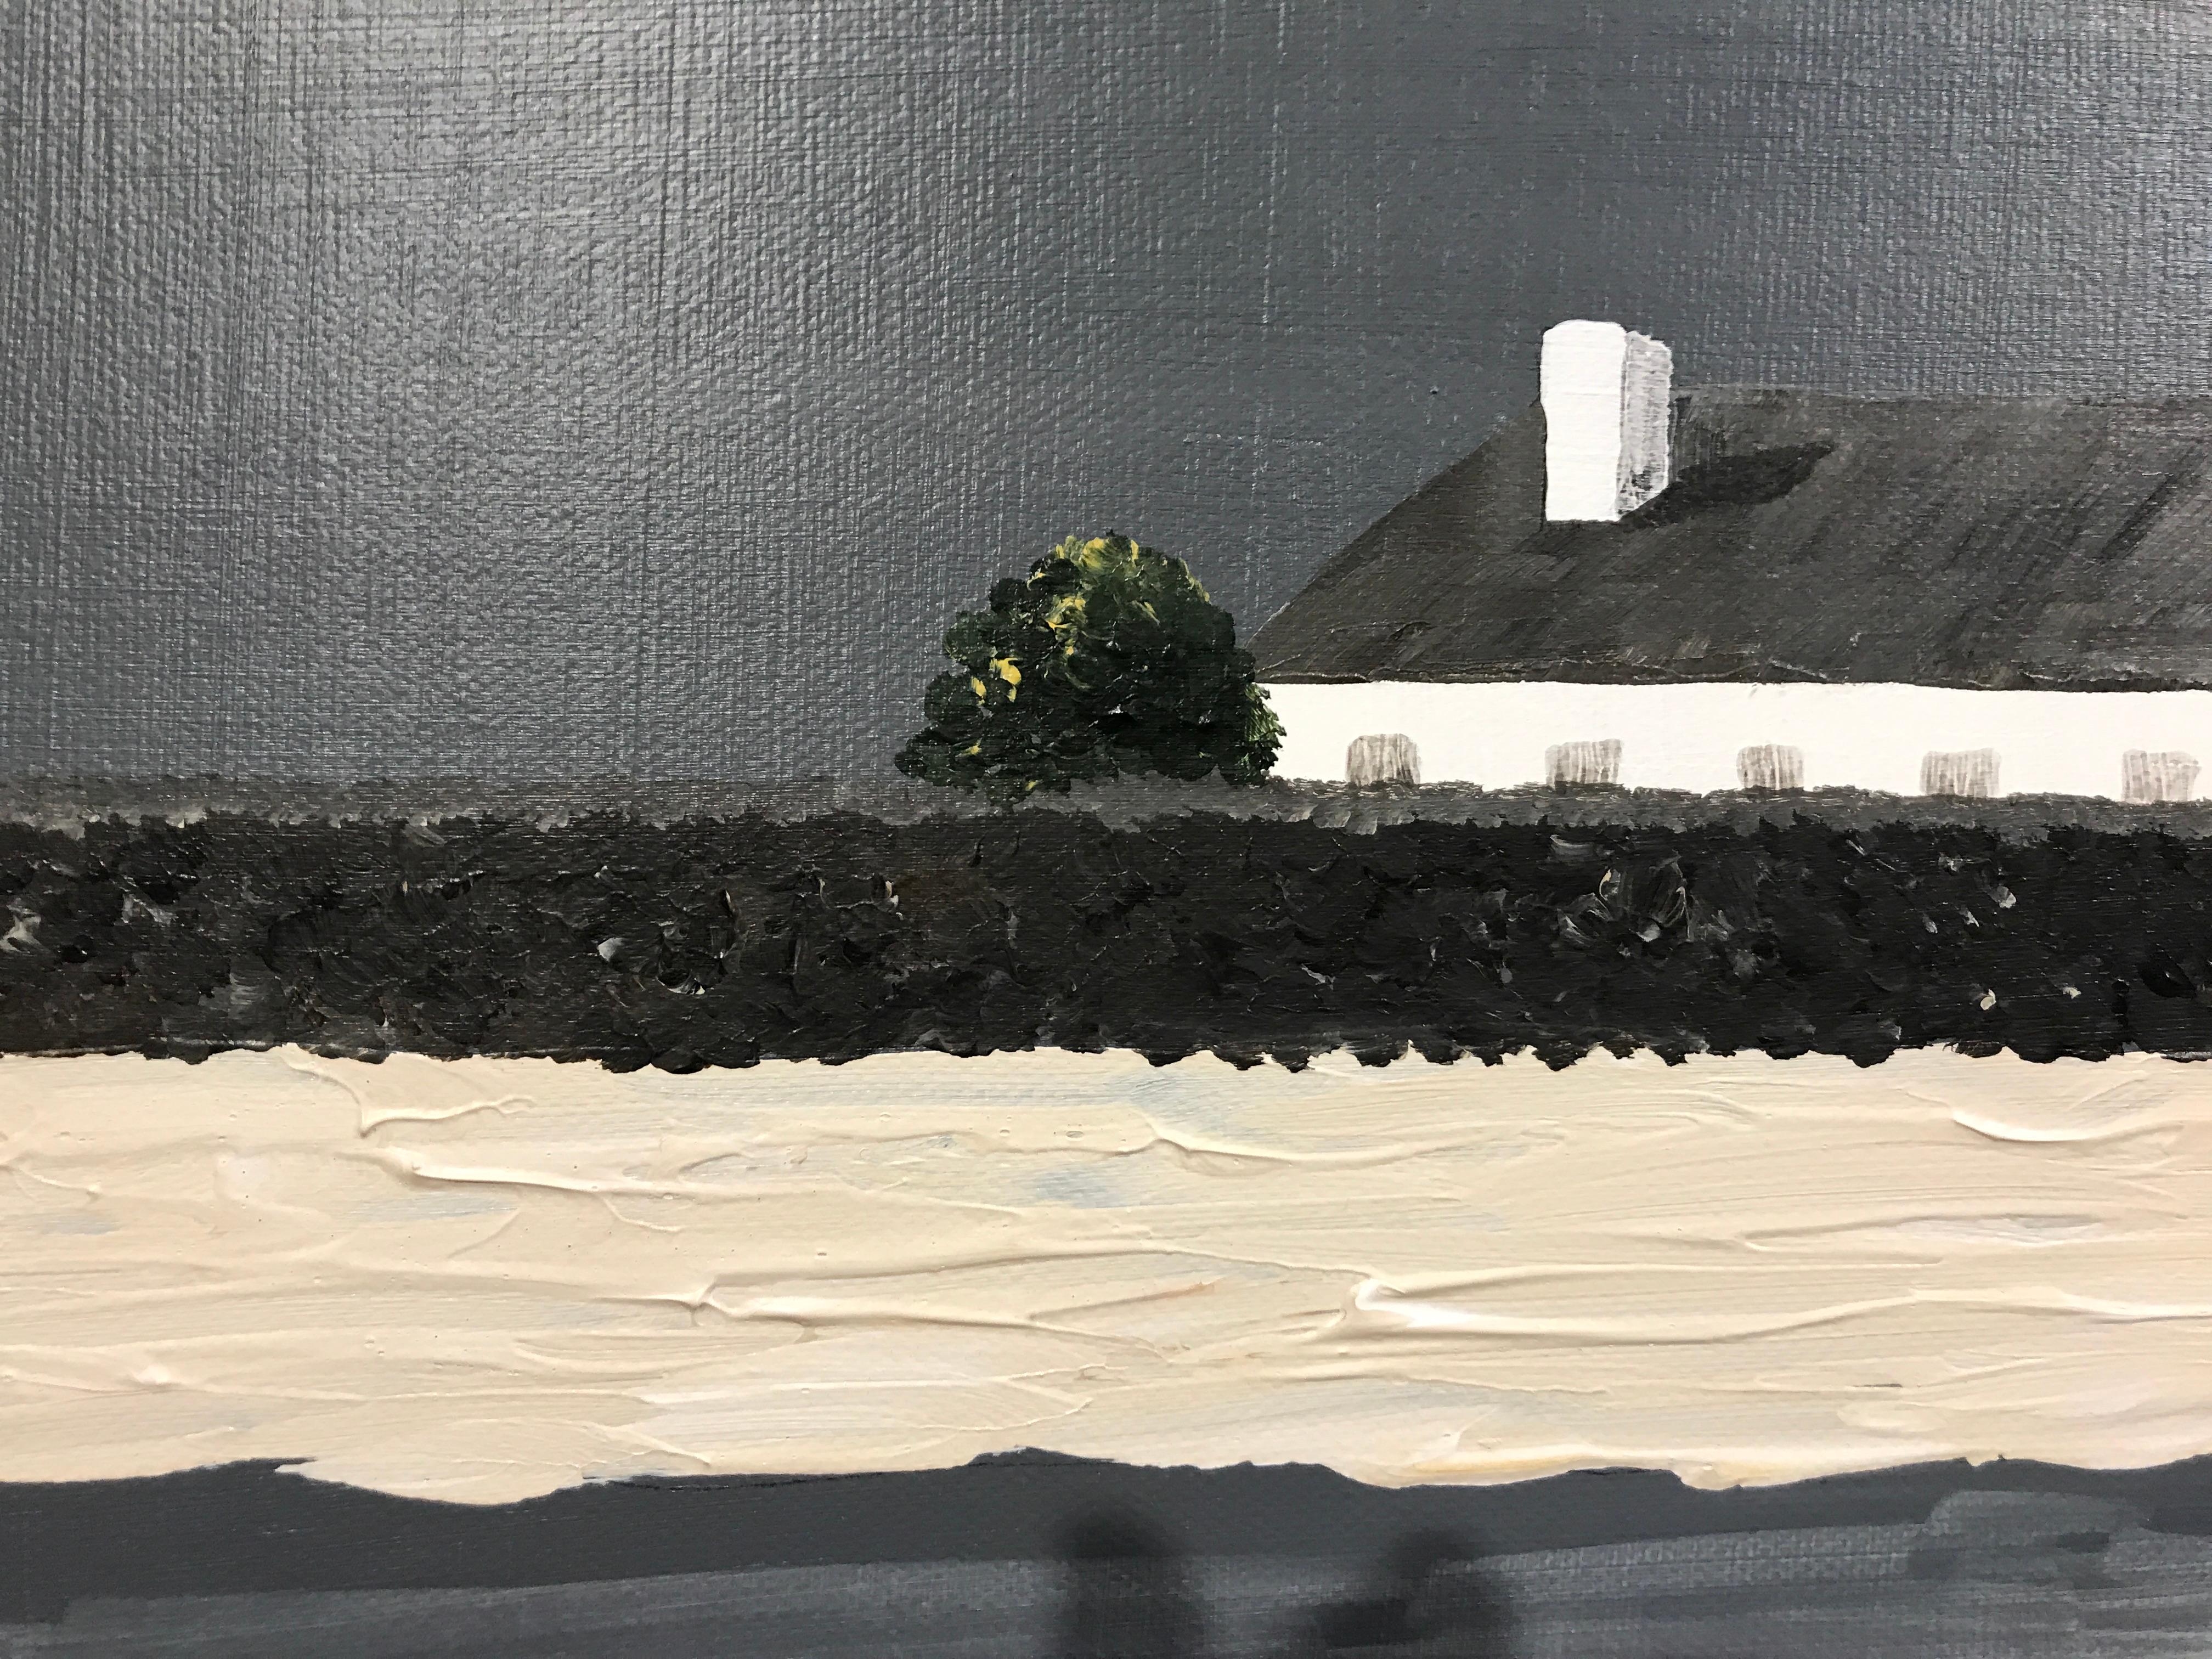 Village Reflected, Susan Kinsella Horizontal Contemporary Coastal Painting 6